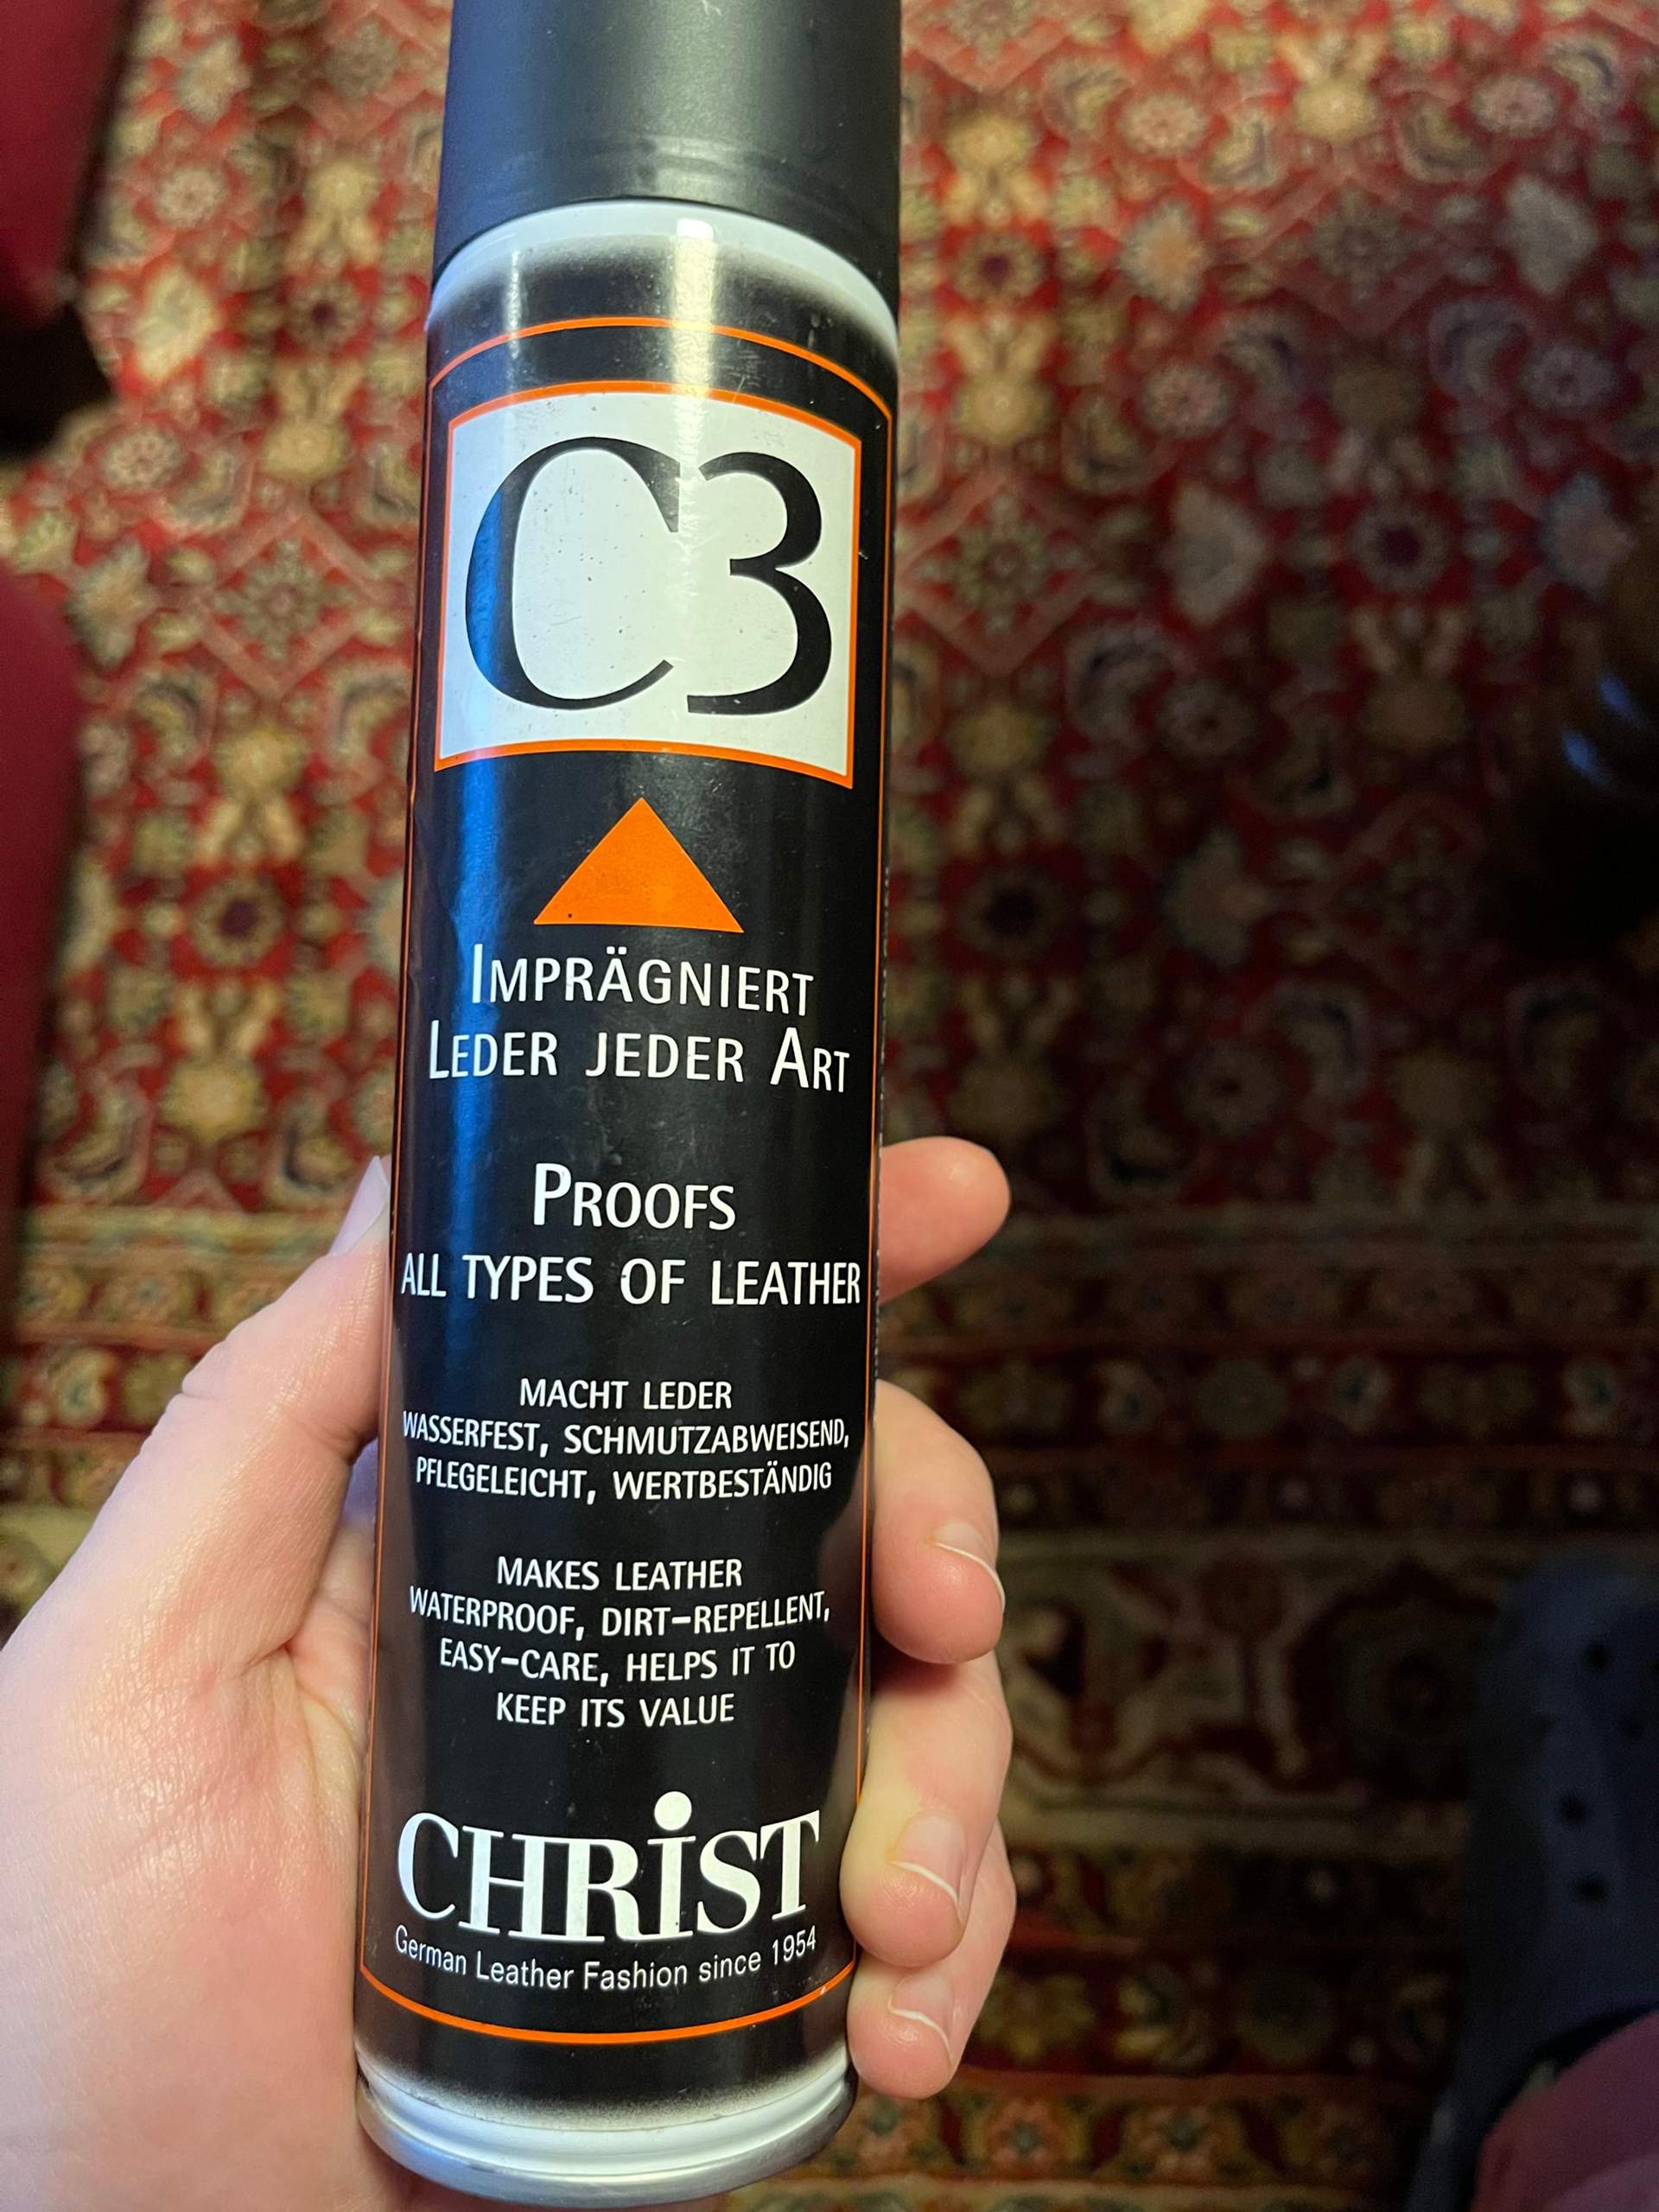 Ist das Christ C3 Imprägnierspray geeignet für Schuhe? (Leder, Stiefel)